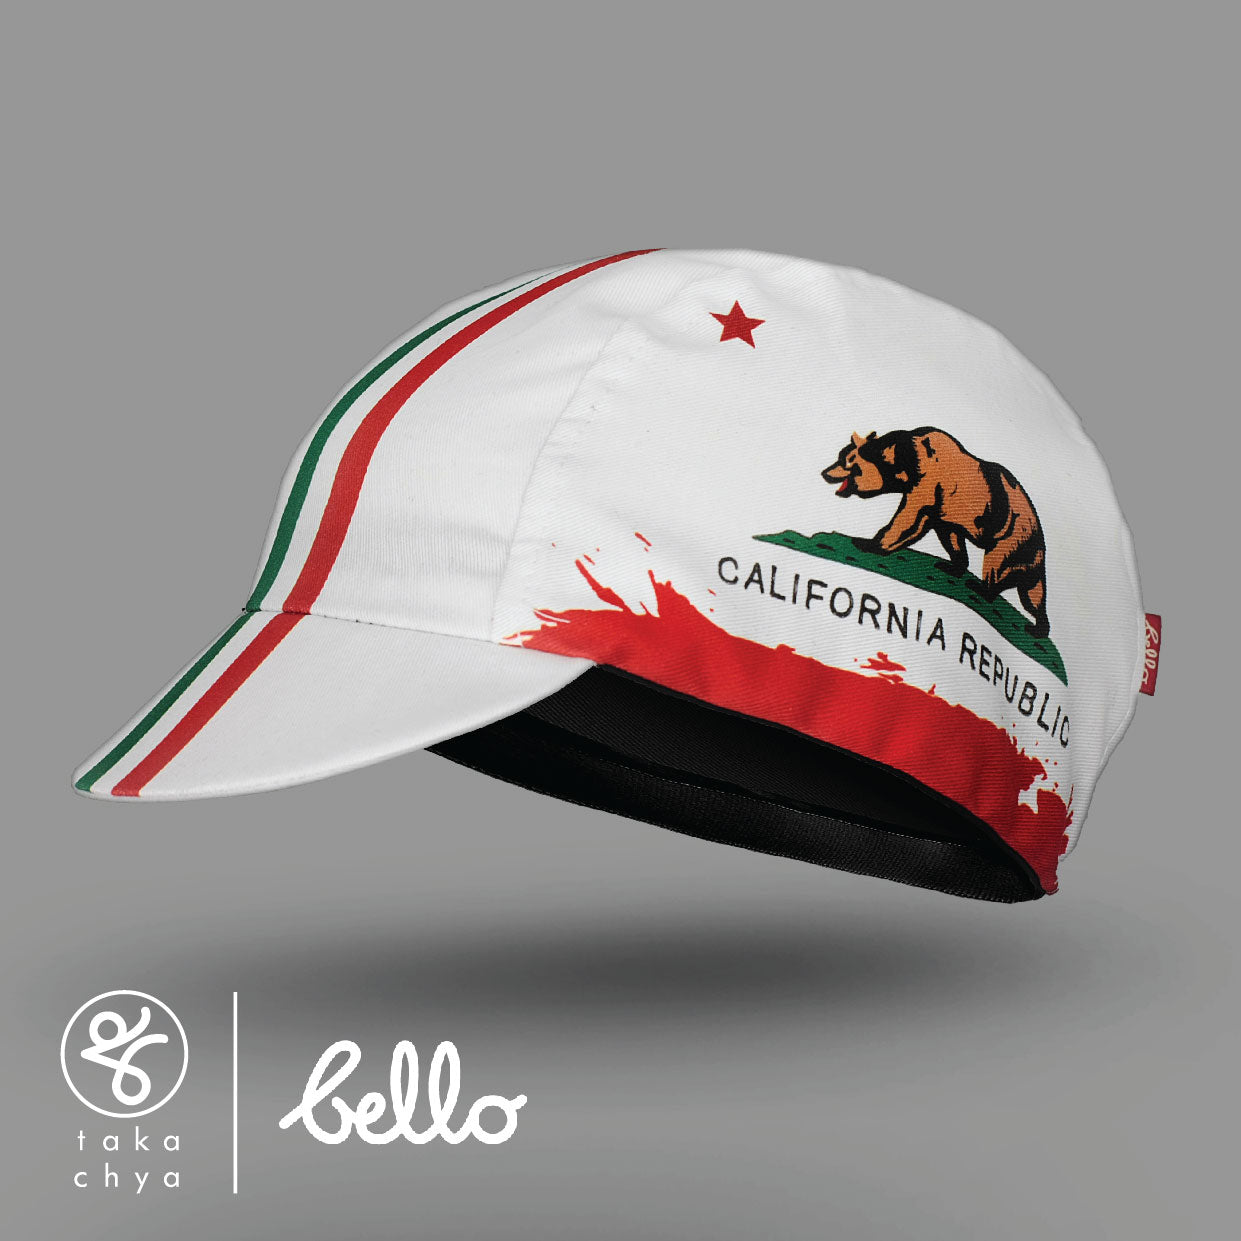 California - Bello Cyclist Designer Collaboration Cycling Cap